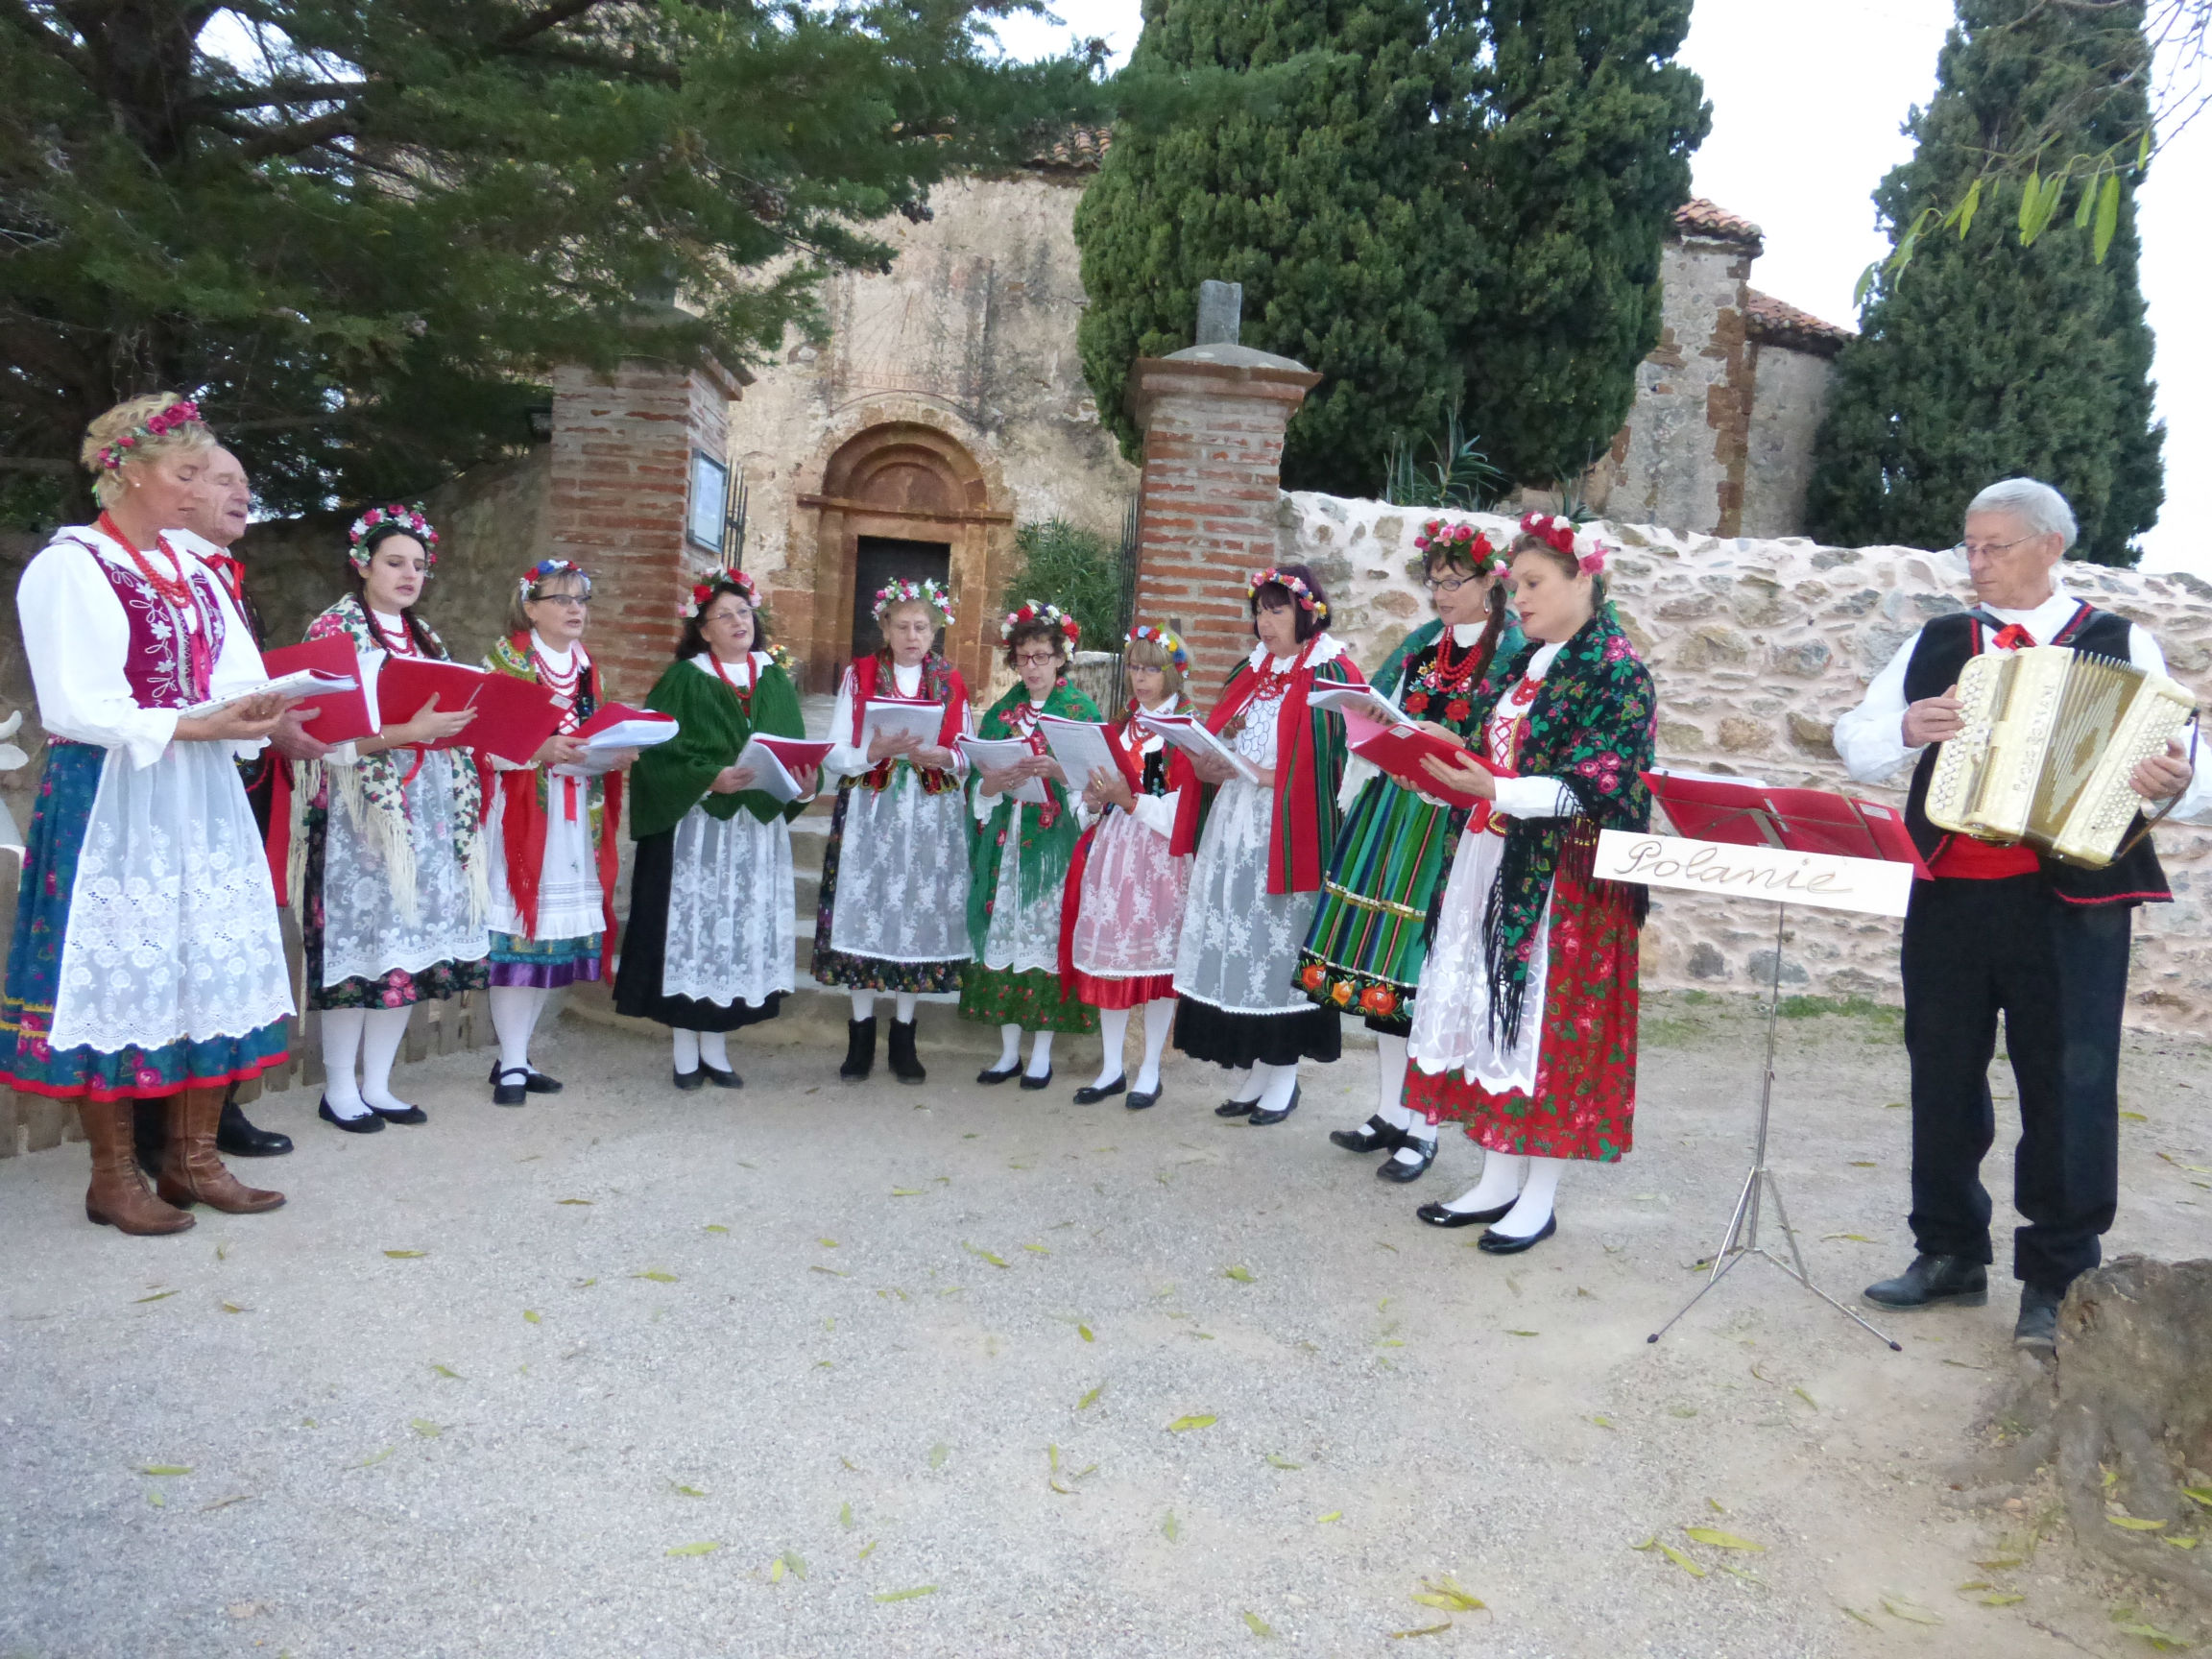 Polanie chante des cantiques de Noël à Castelnou